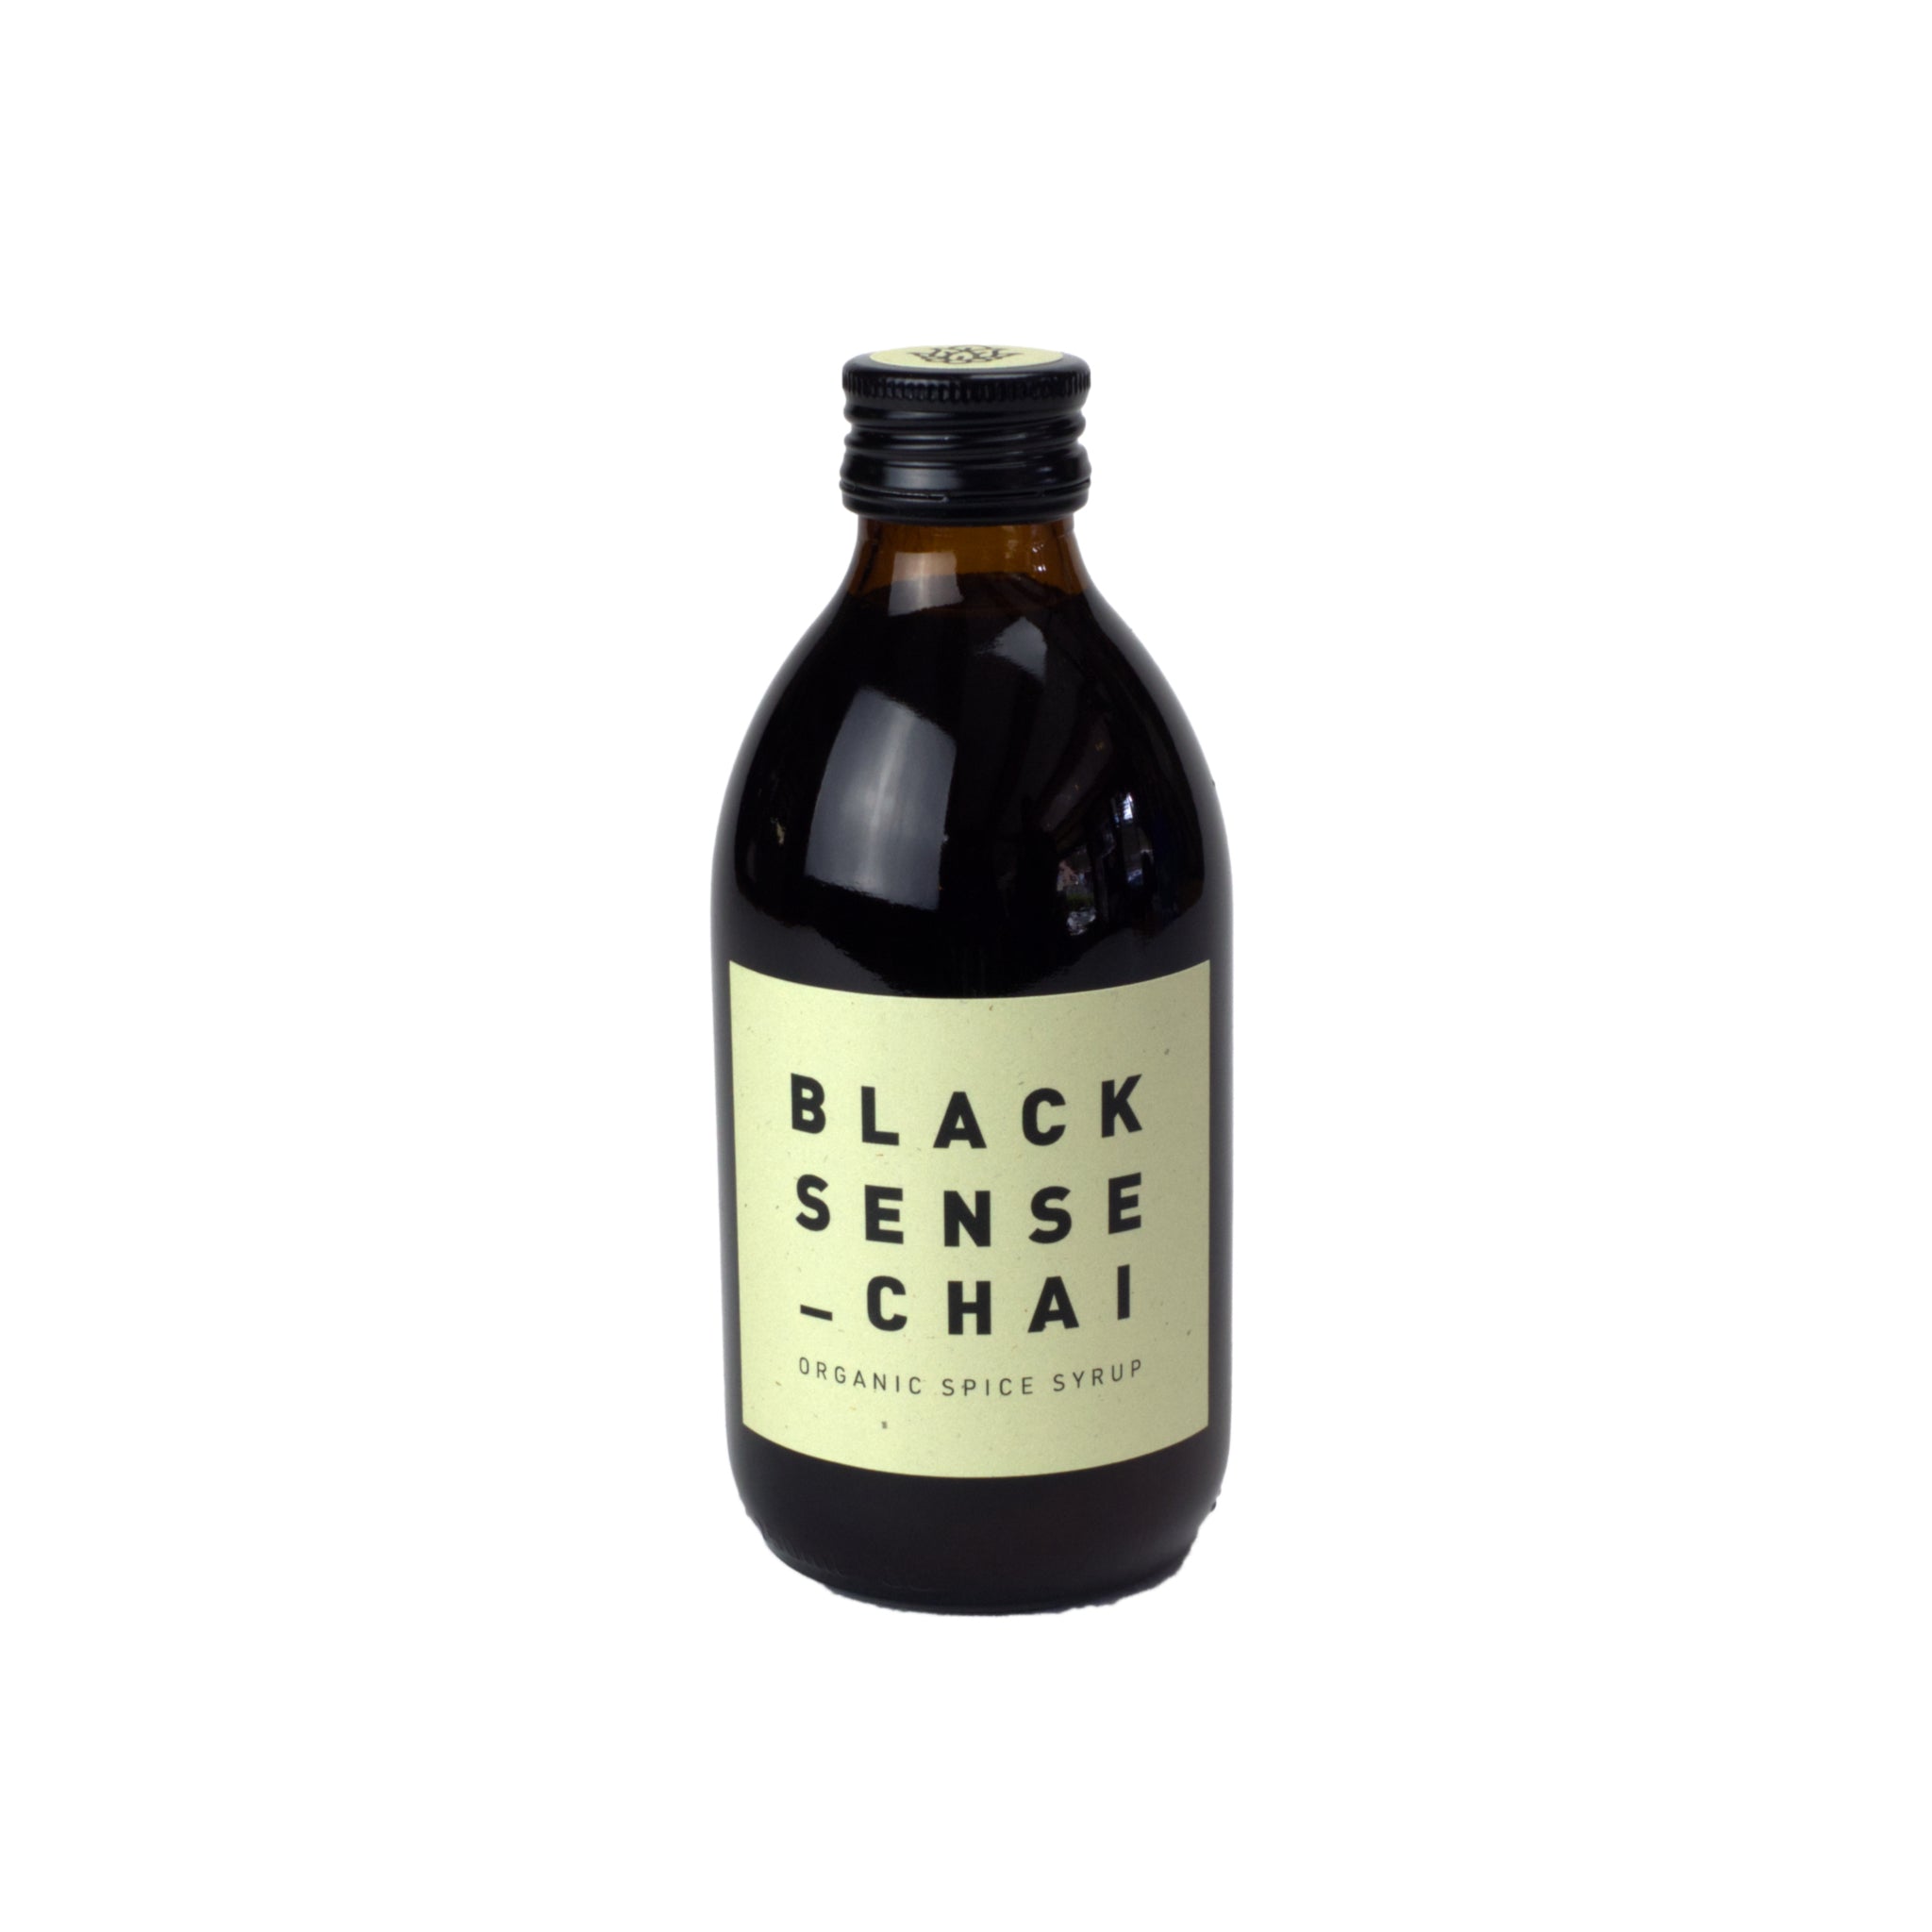 Black Sense Chai Flasche in 250 ml. Braune Flasche mit hellgelbem Etikett.